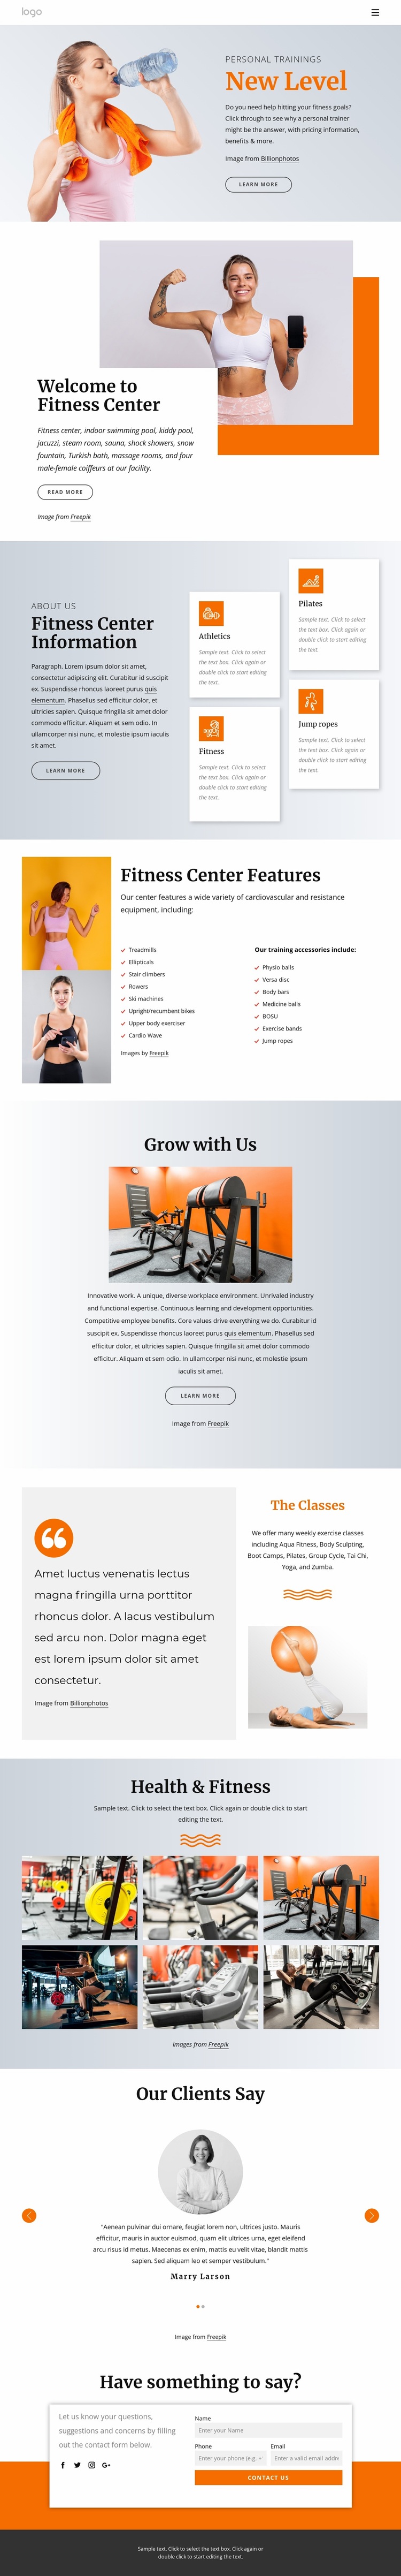 24 hour fitness center Website Design